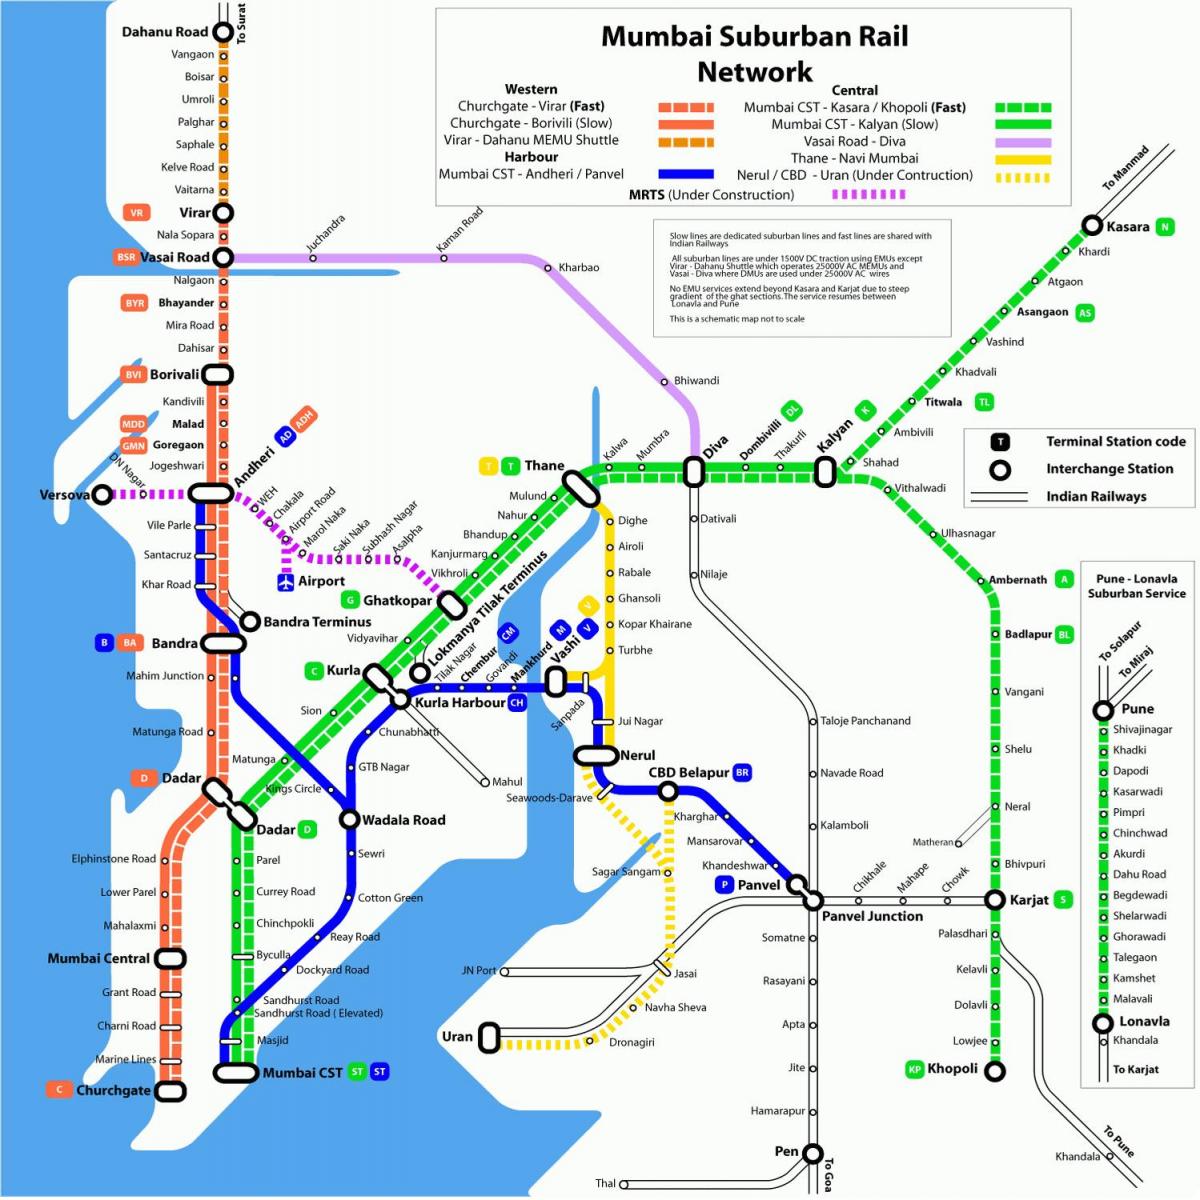 Mumbai plaaslike spoorweg-kaart